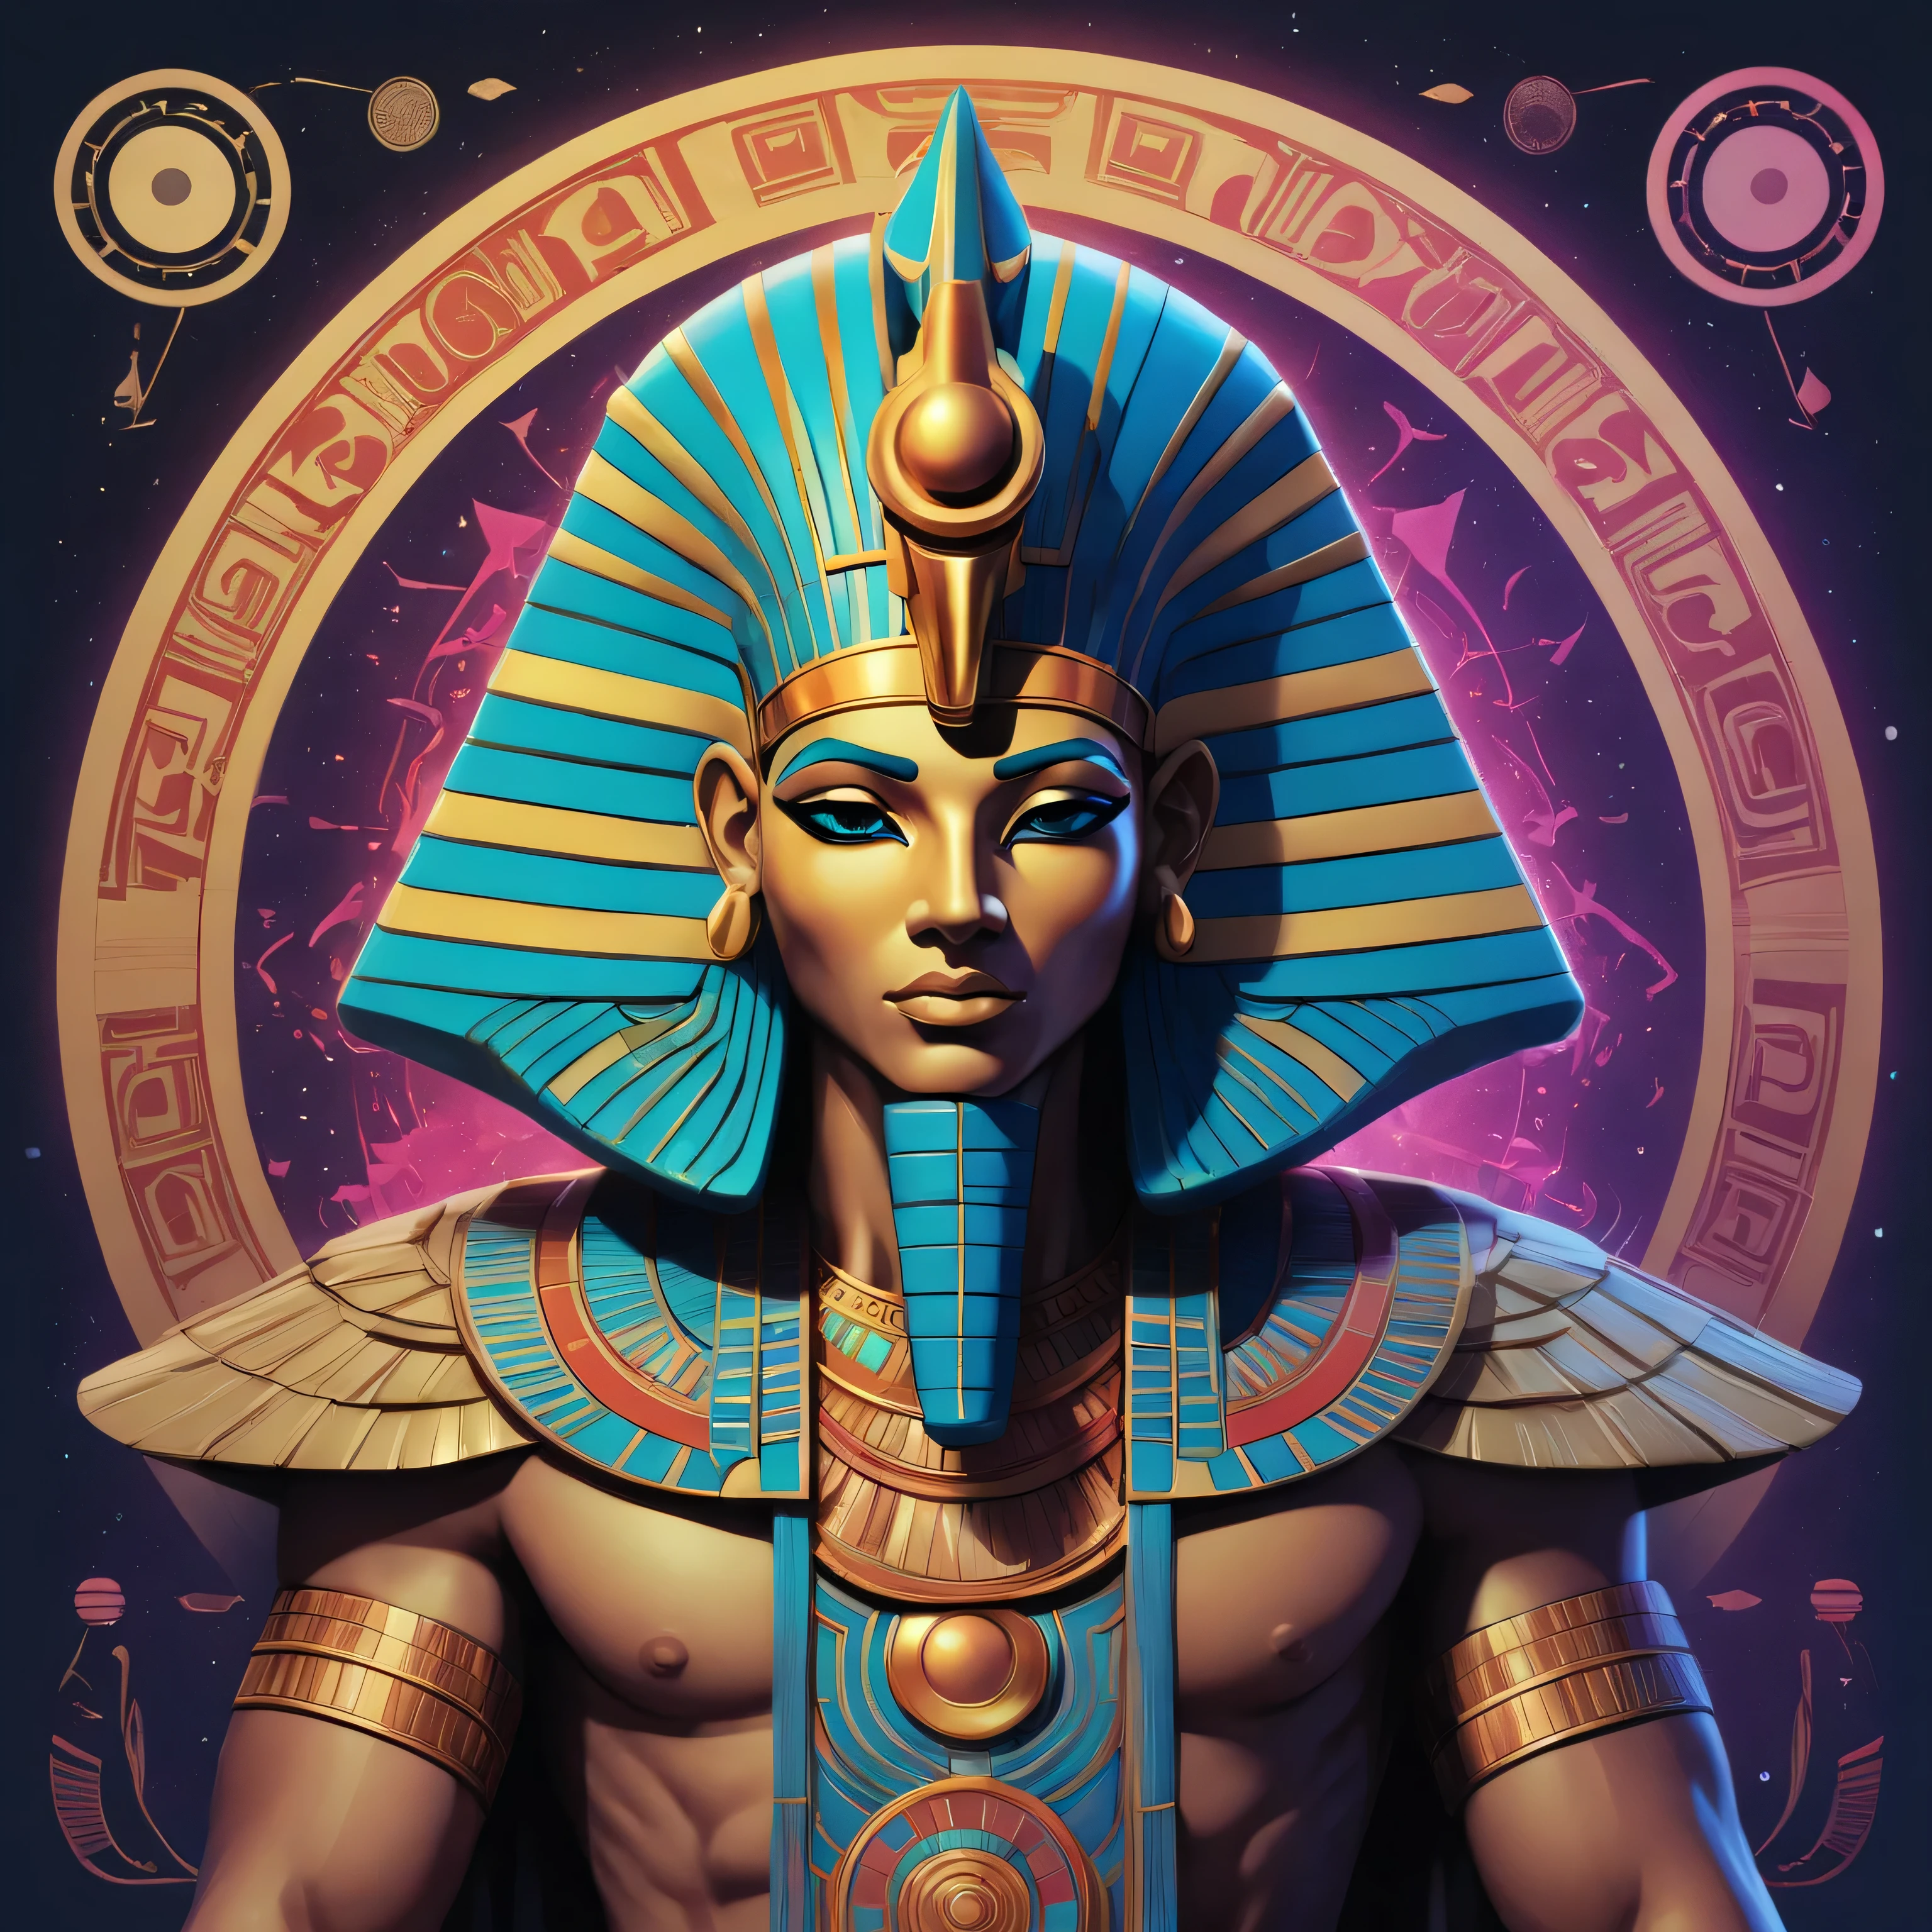 Im zeitgenössischen Digital Art-Design, Erstellen Sie eine lebendige Pop-Art-Interpretation von Heka, der altägyptische Gott der Magie. Mischen Sie Anime- und Comic-Ästhetik mit kräftigen Linien, leuchtende Farben, und faszinierende biolumineszierende Akzente. Illustrieren Sie Hekas transzendente Form mit komplizierten geometrischen Mustern, die von ägyptischen Hieroglyphen inspiriert sind, Er demonstriert seine Fähigkeit, die Realität zu verbiegen und die Elemente zu manipulieren. Bringen Sie seine ausgeprägte Eigenschaft der Veränderung und Transformation mit betrunkenen Perspektivwechseln zum Ausdruck, geschmückt mit einem einzigartigen, geschichtsträchtiger Stoff, erinnert an heilige ägyptische Wandteppiche, verkörpert eine himmlische, gottähnliche Präsenz und ist zugleich in einer reichen Kulturgeschichte verwurzelt.